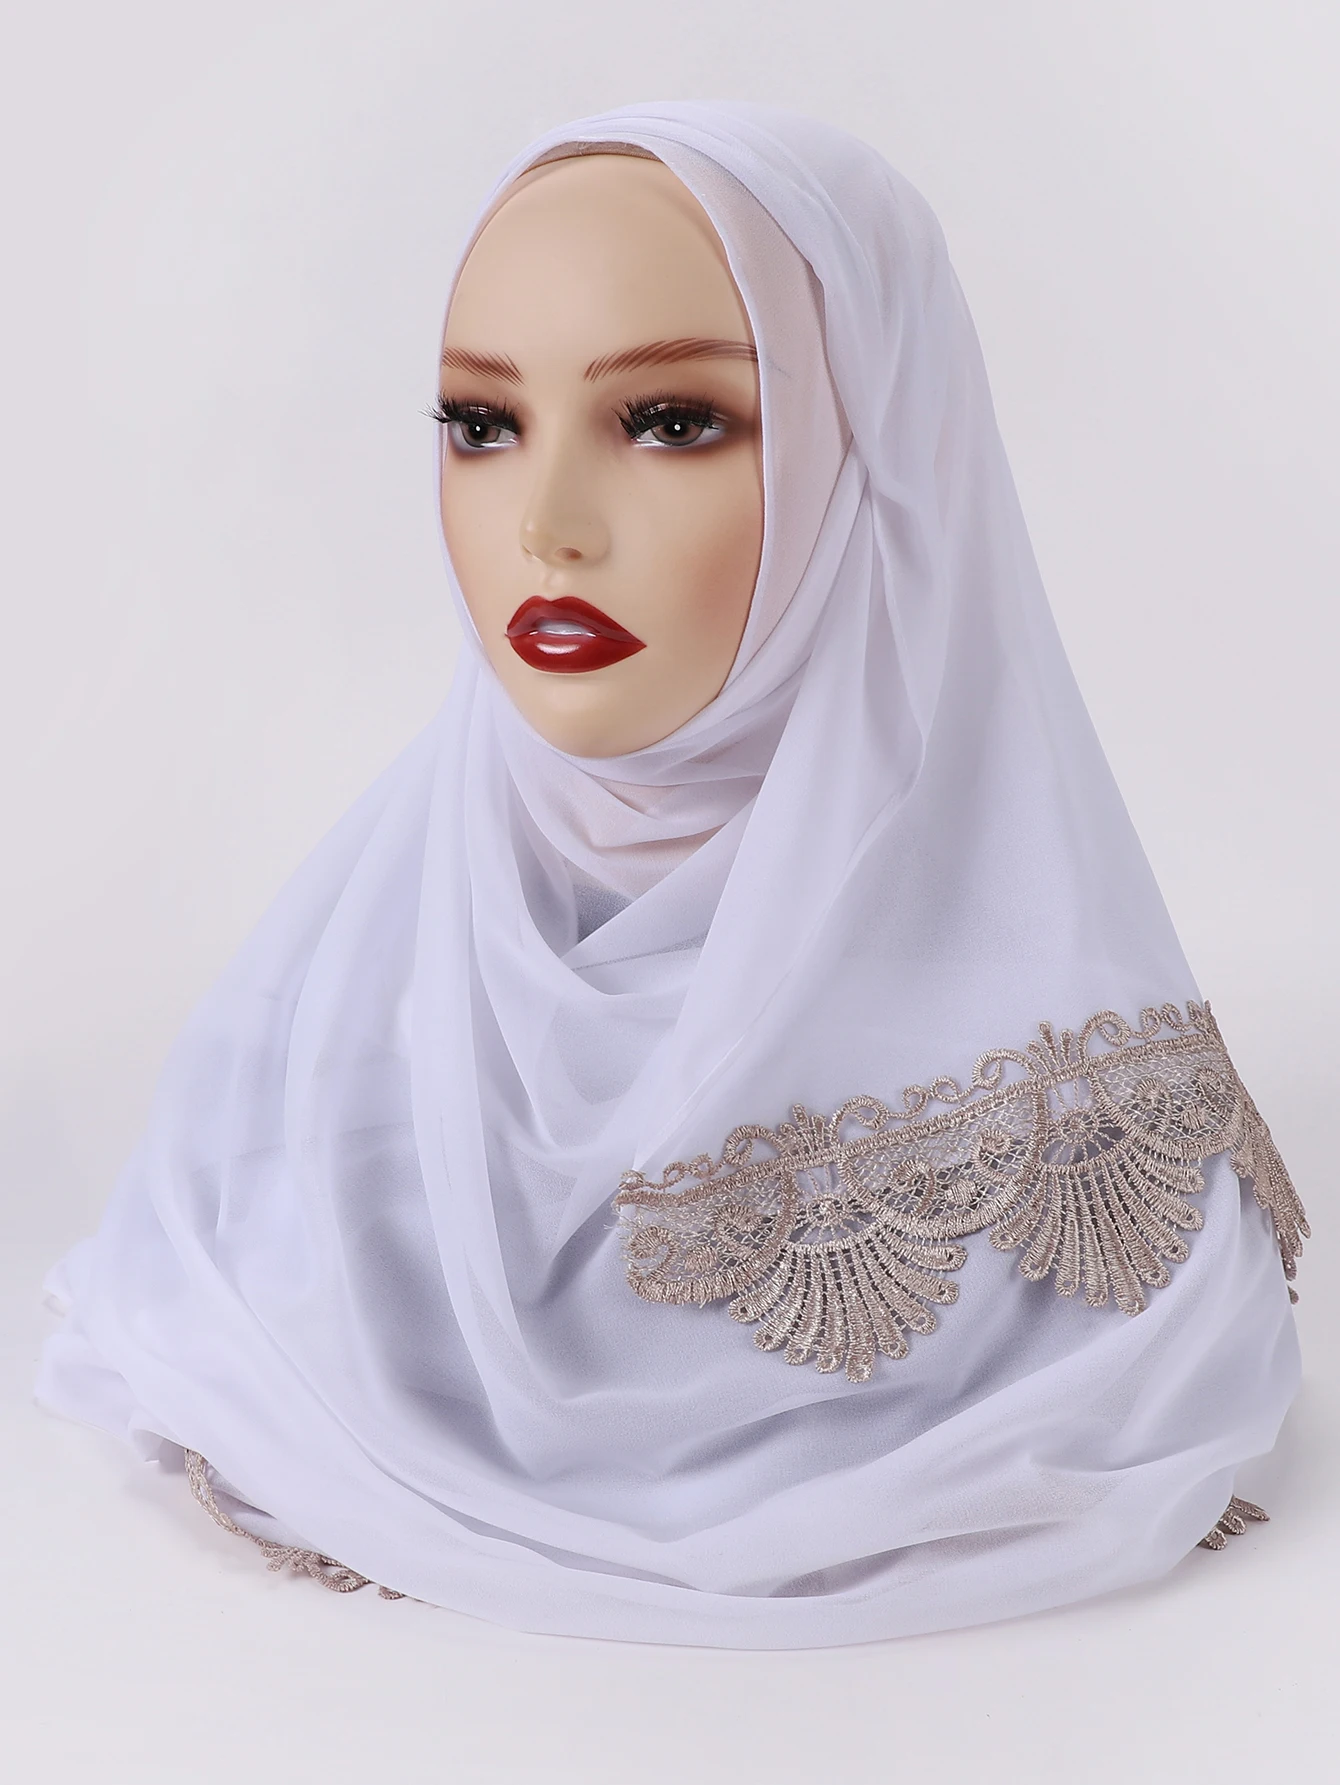 Pasador magnético de chifón bordado para mujeres musulmanas, bufanda de Color sólido, chales, diadema, Foulard Islámico